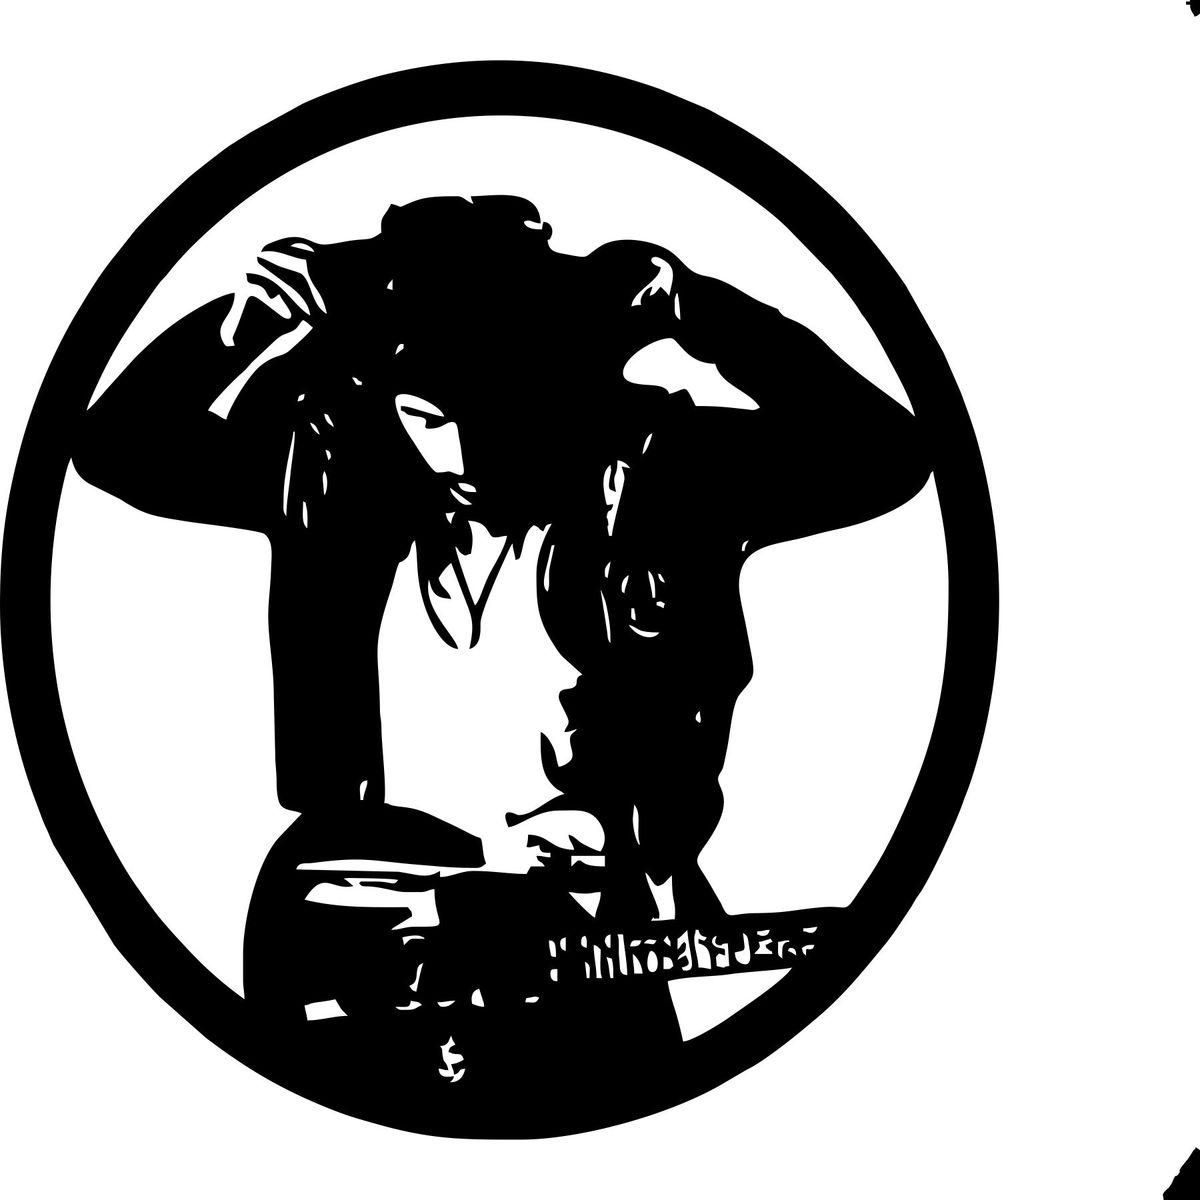 Bruce Springsteen Logo - Bruce Springsteen 4 Laser Cut Vinyl Record Artist Representation